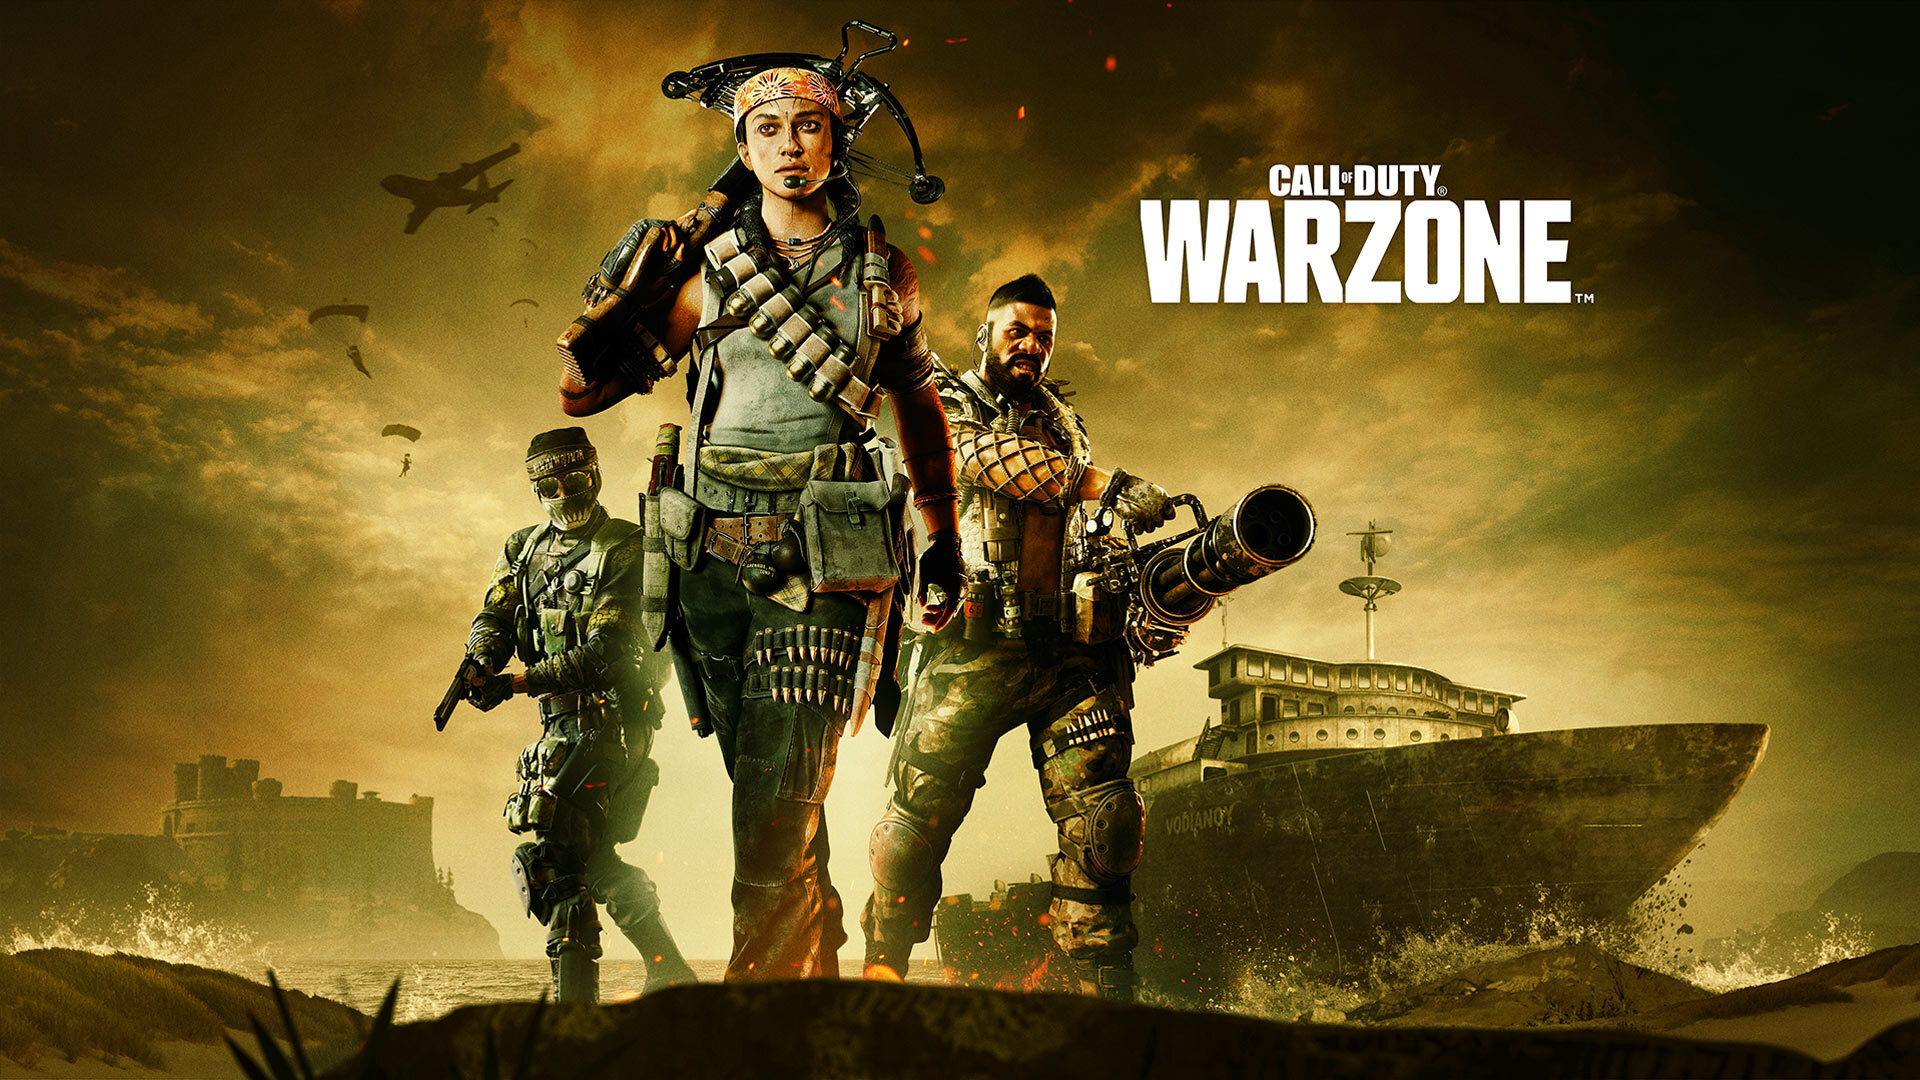 Los equipos de Activision siguen comprometidos con erradicar a los tramposos y reincidentes en Call of Duty y Call of Duty Warzone.